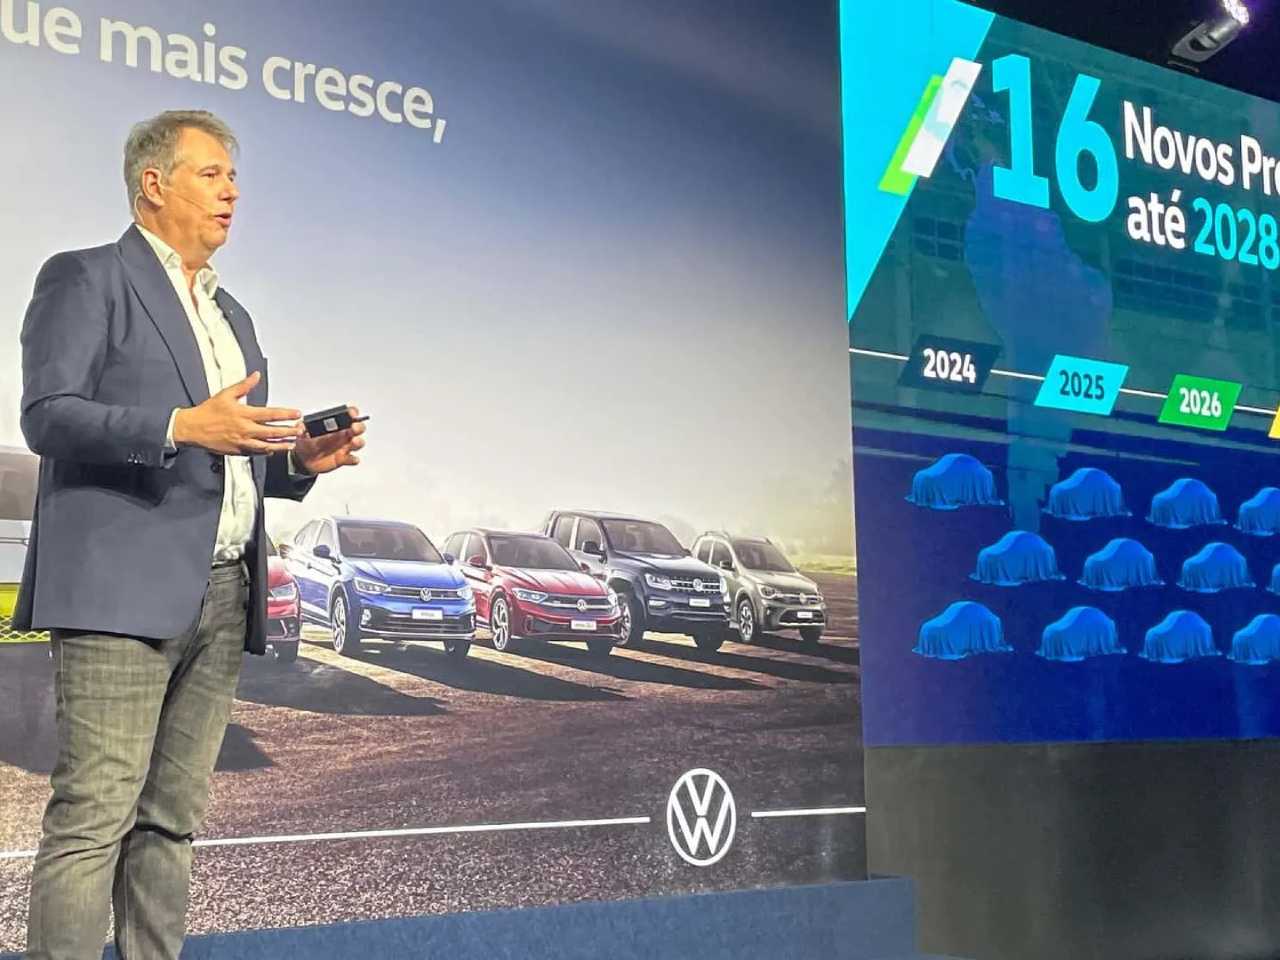 Presidente da VW do Brasil, Ciro Possobom, durante anúncio dos novos investimentos da fabricante no país